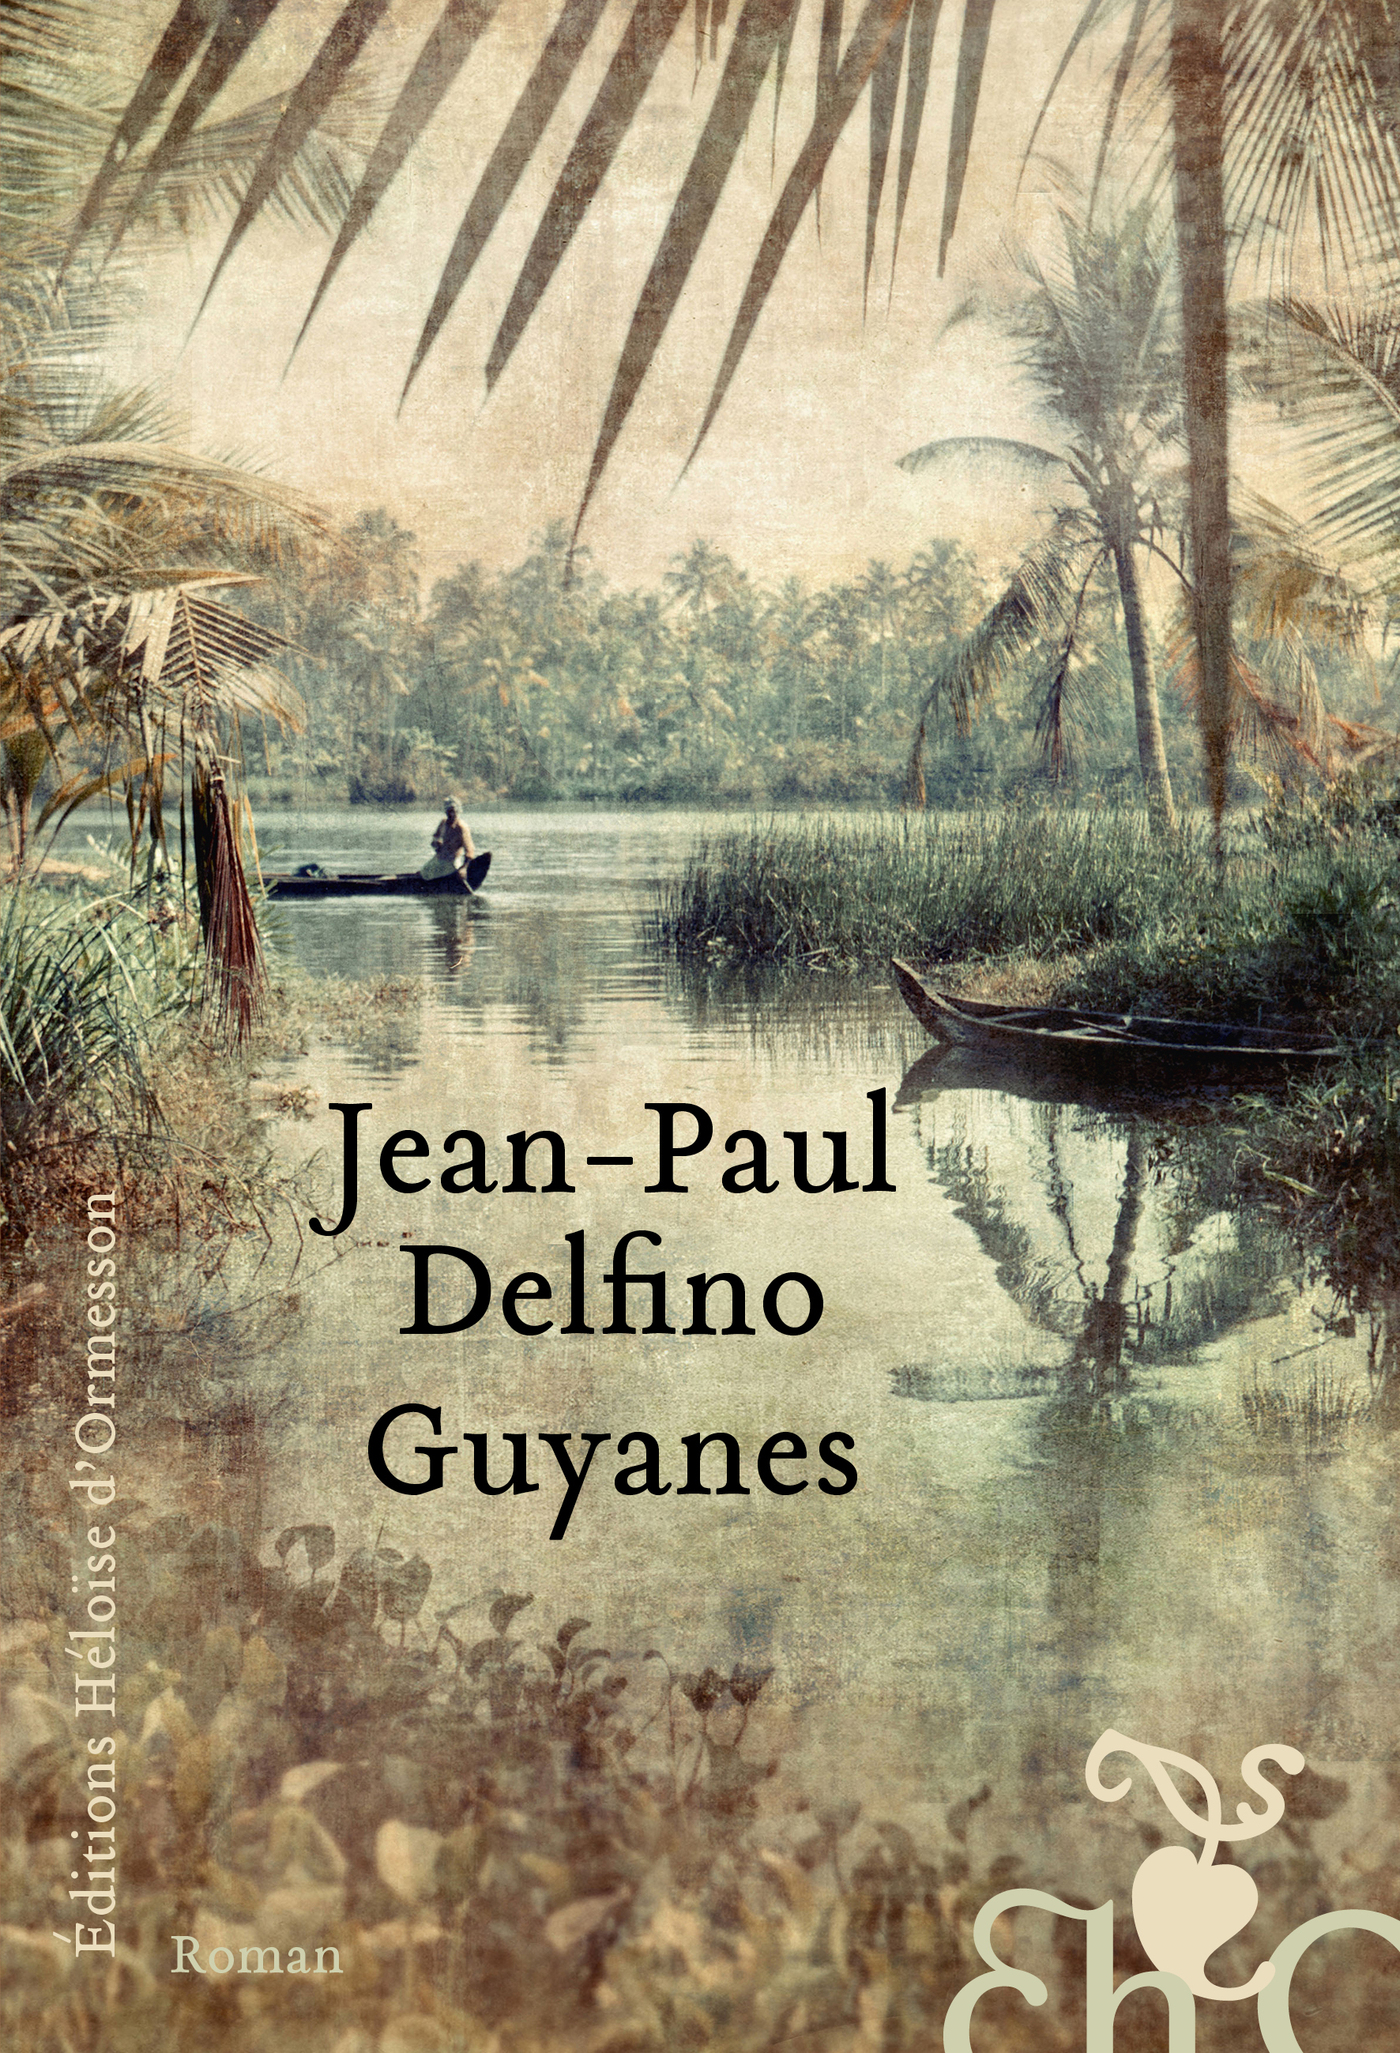 Afficher "Guyanes"